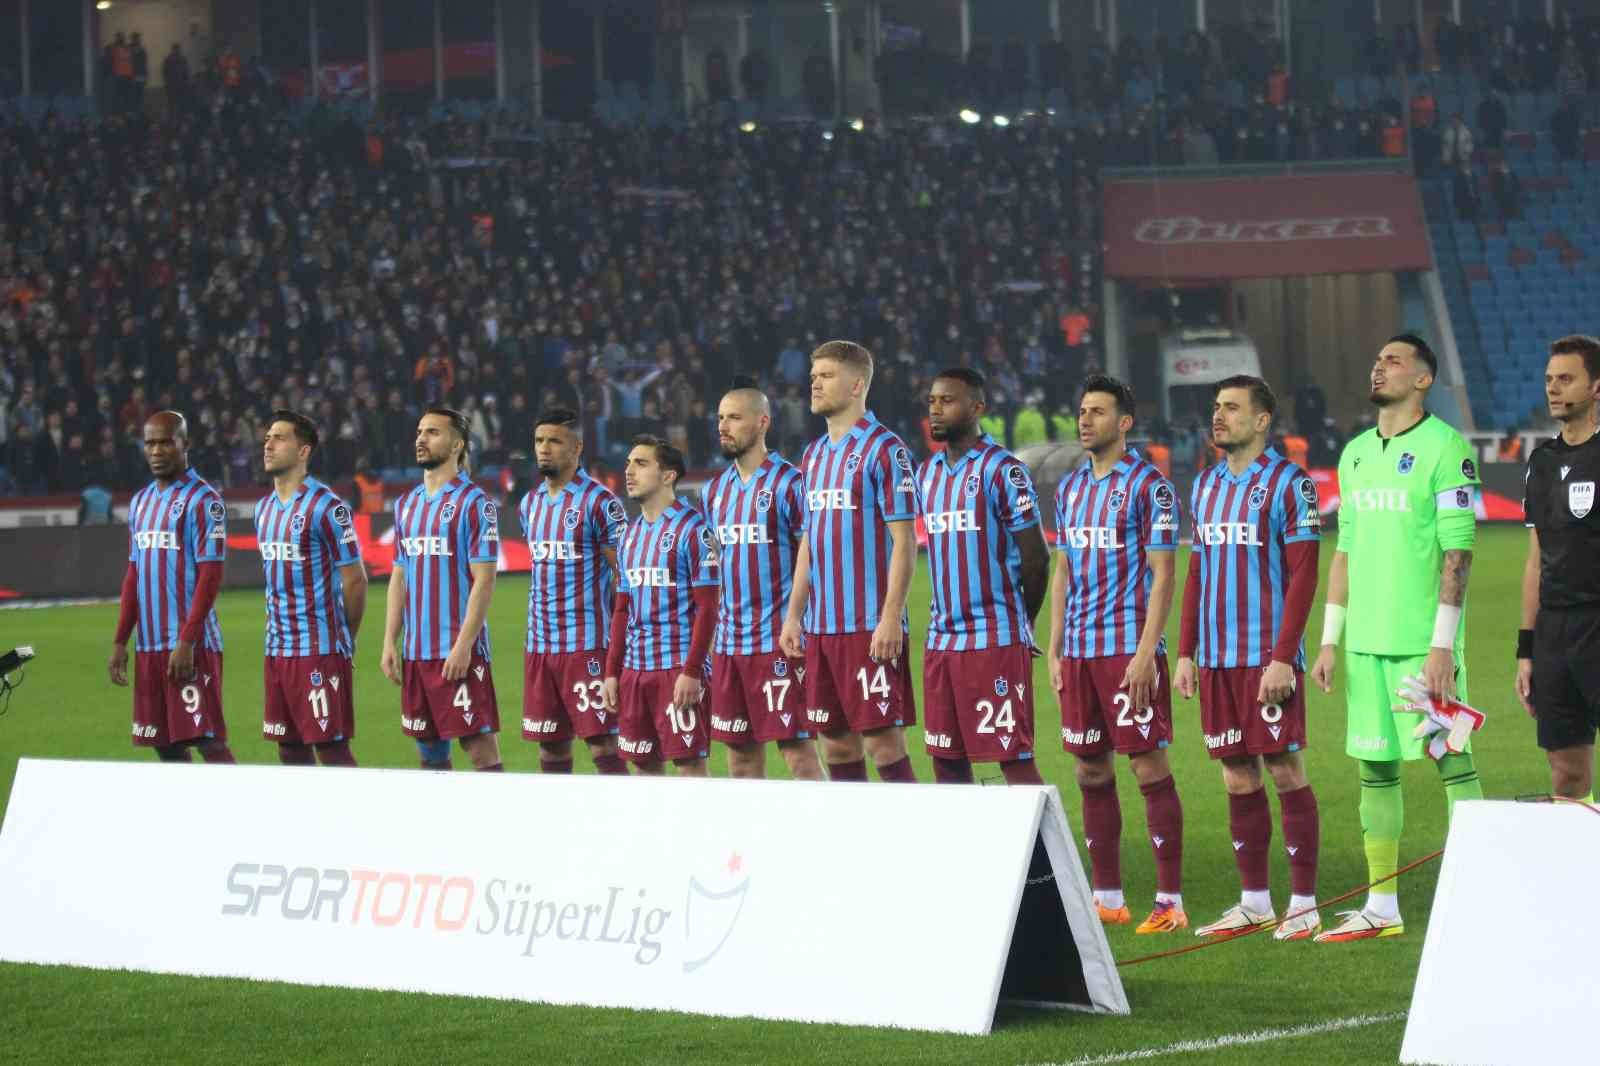 Süper Lig’de 20. hafta sürprizlerle tamamlandı #istanbul